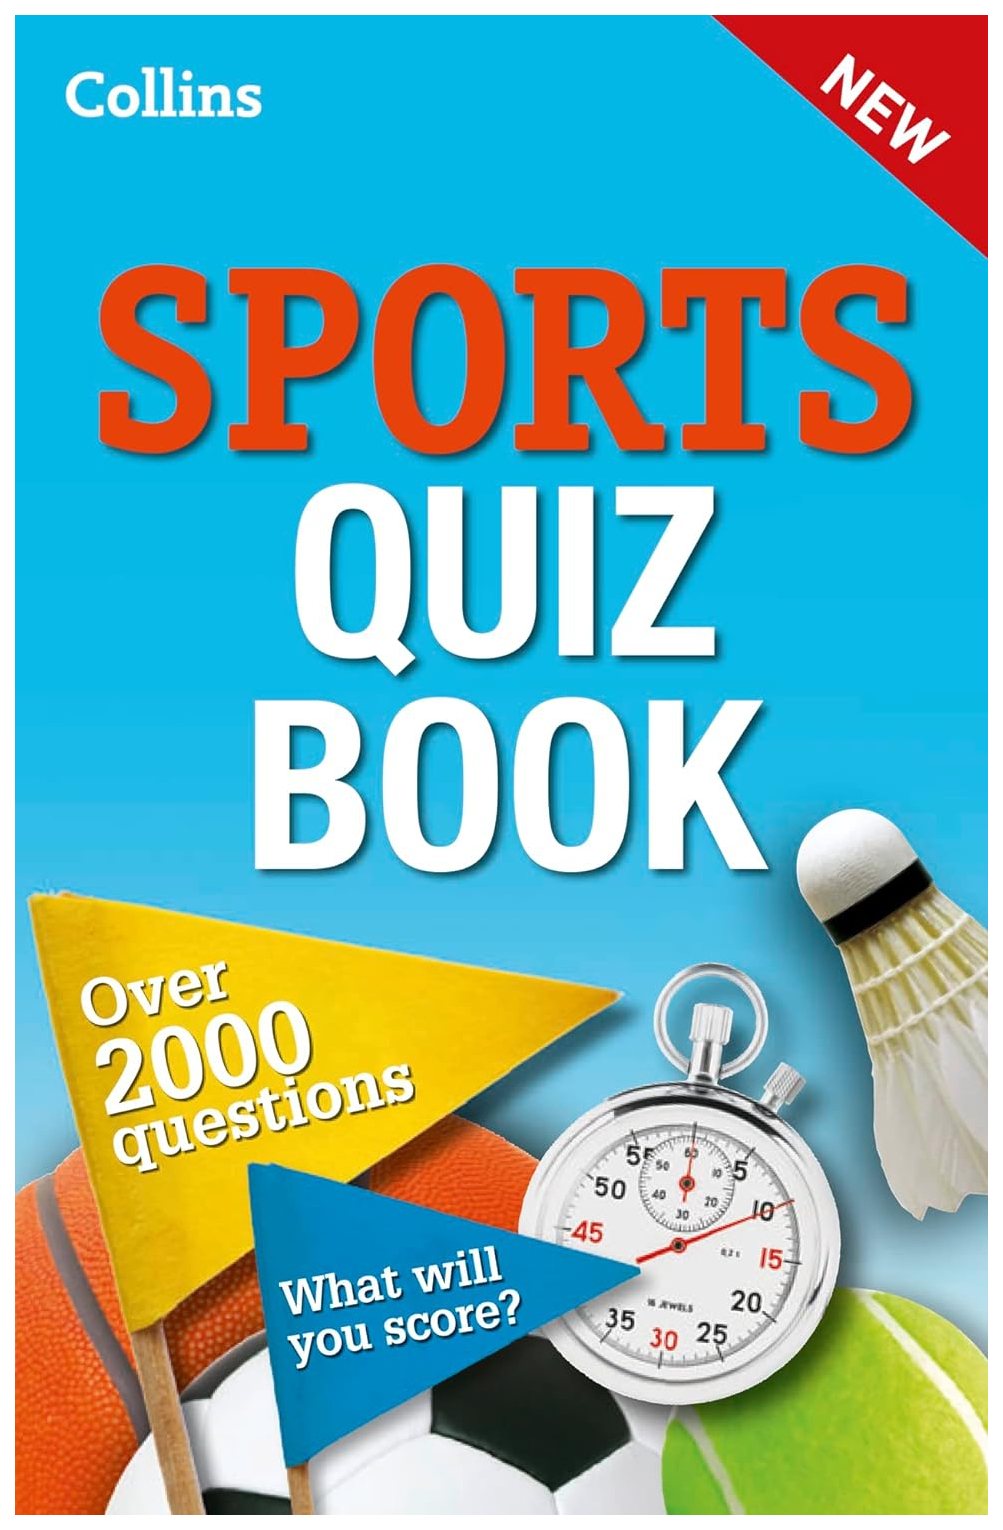 Спорт квиз. Collins books. Спортивный квиз. Квиз книга. Quizzes for Sports.